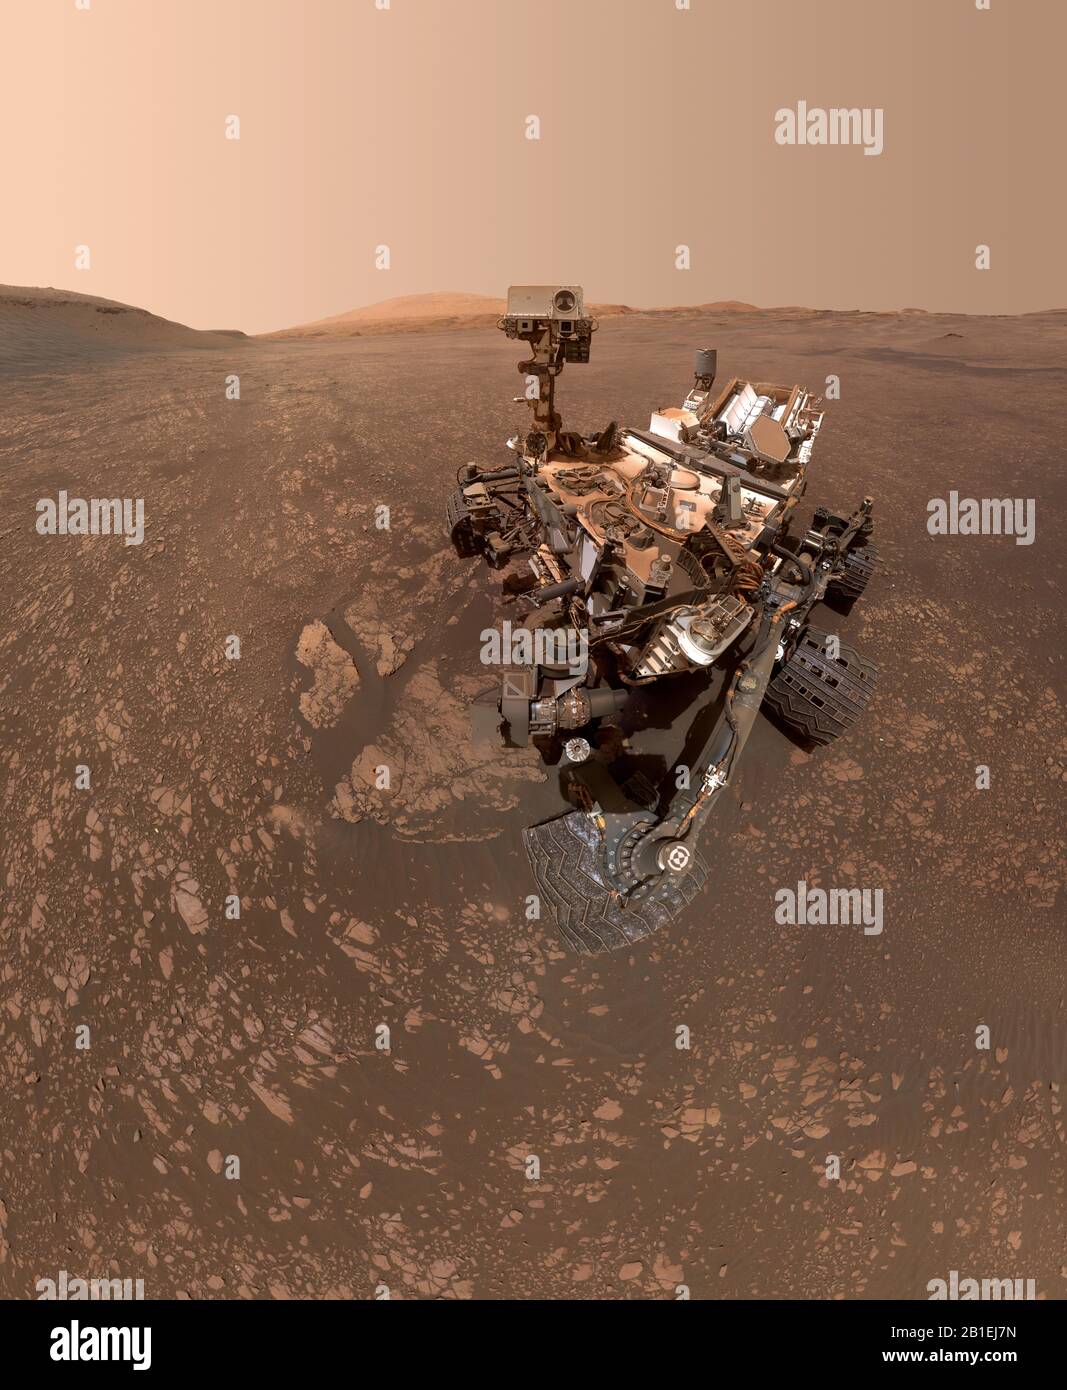 Marte - 12 Mayo 2019 - Curiosidades de la NASA mars rover tomó este selfie el 12 de mayo de 2019 (el día 2, 4 y 5 de Marte, o sol, de la misión). Hacia la parte inferior izquierda Foto de stock